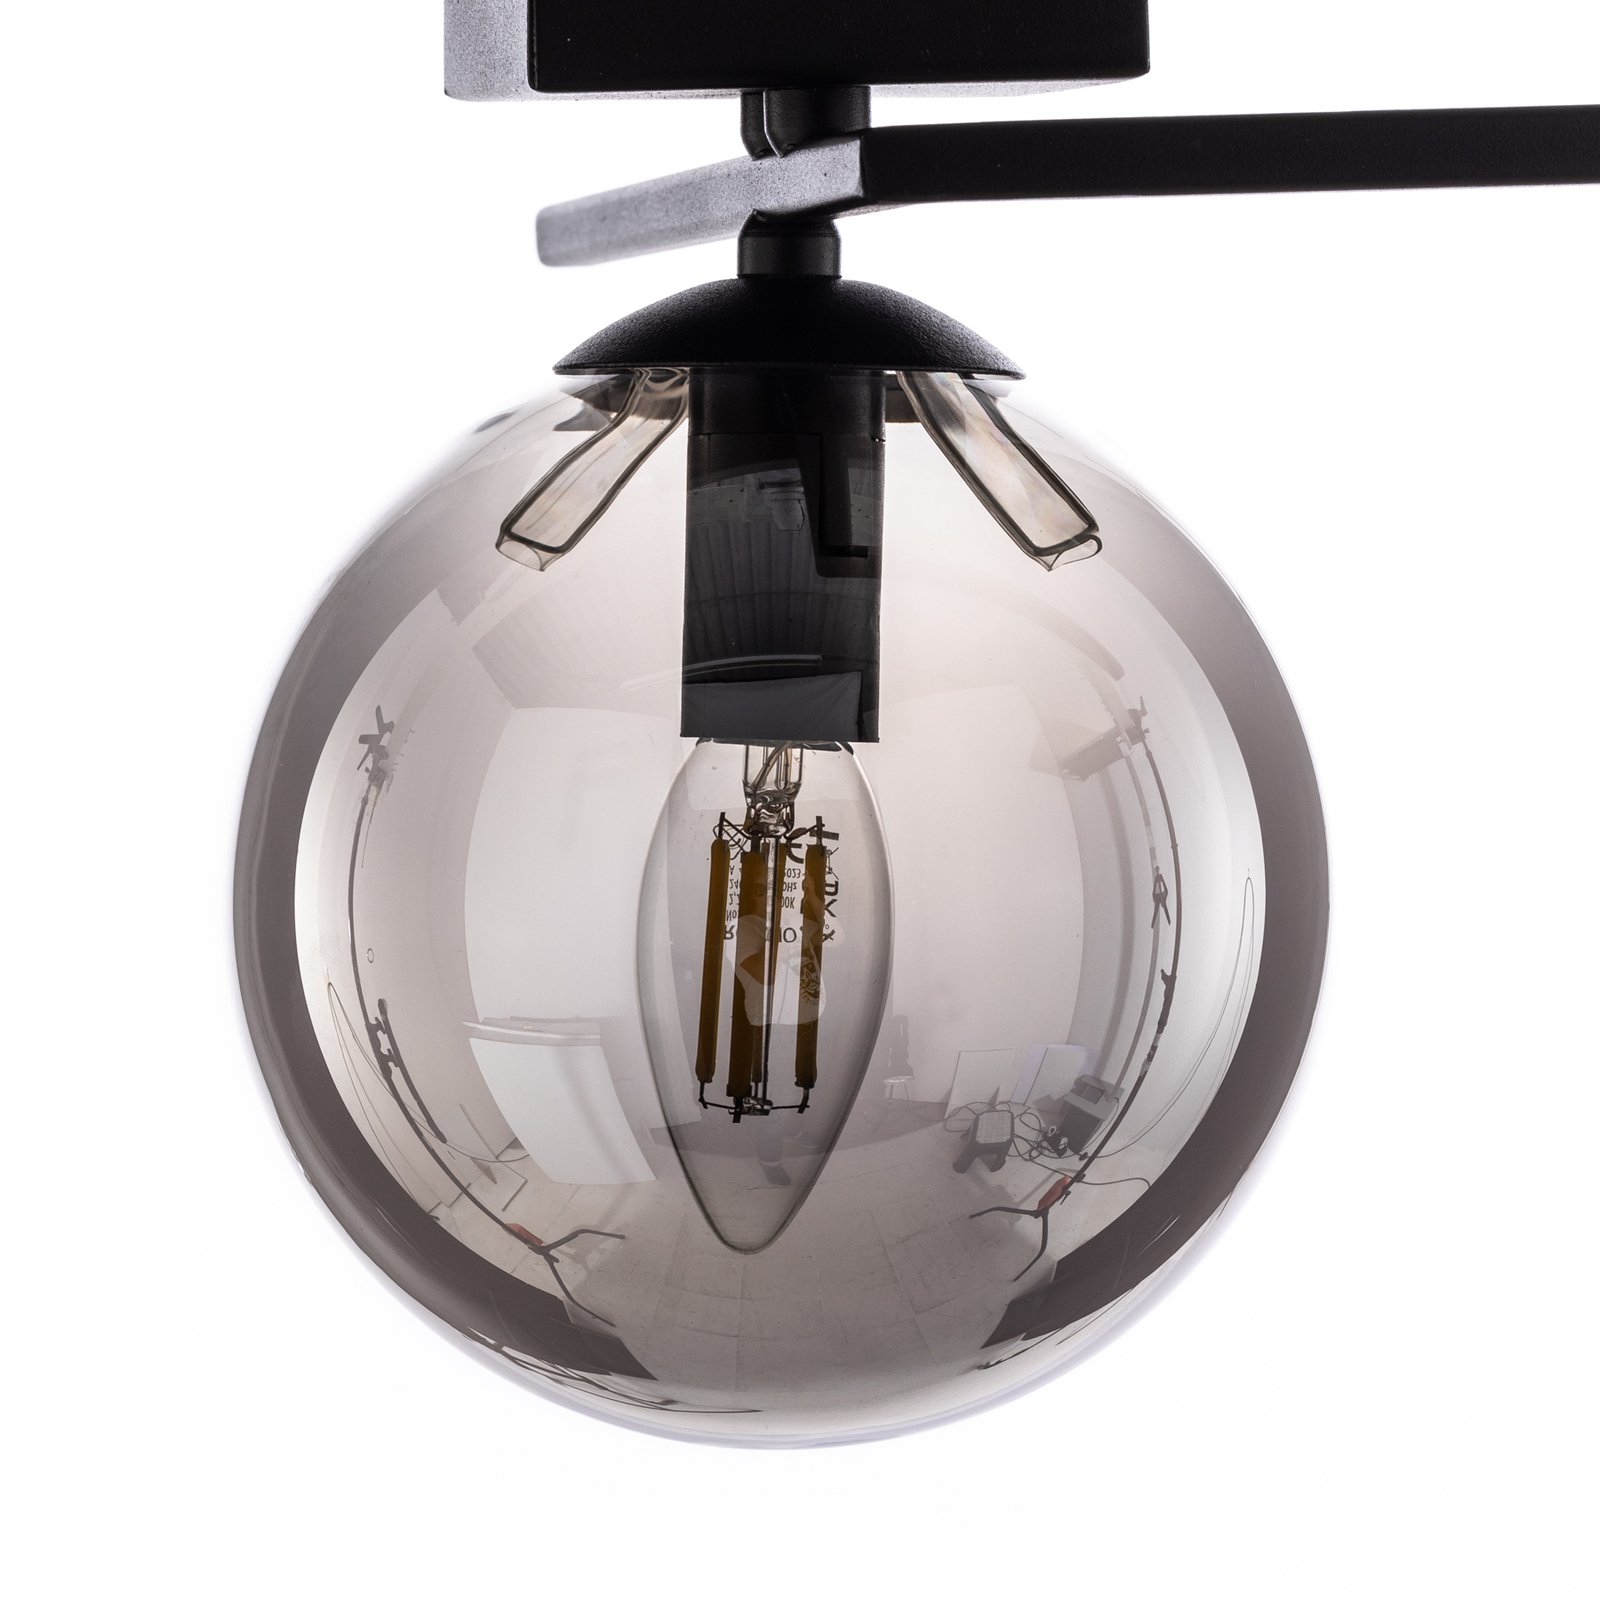 Imago 1G ceiling light, one-bulb, black/graphite